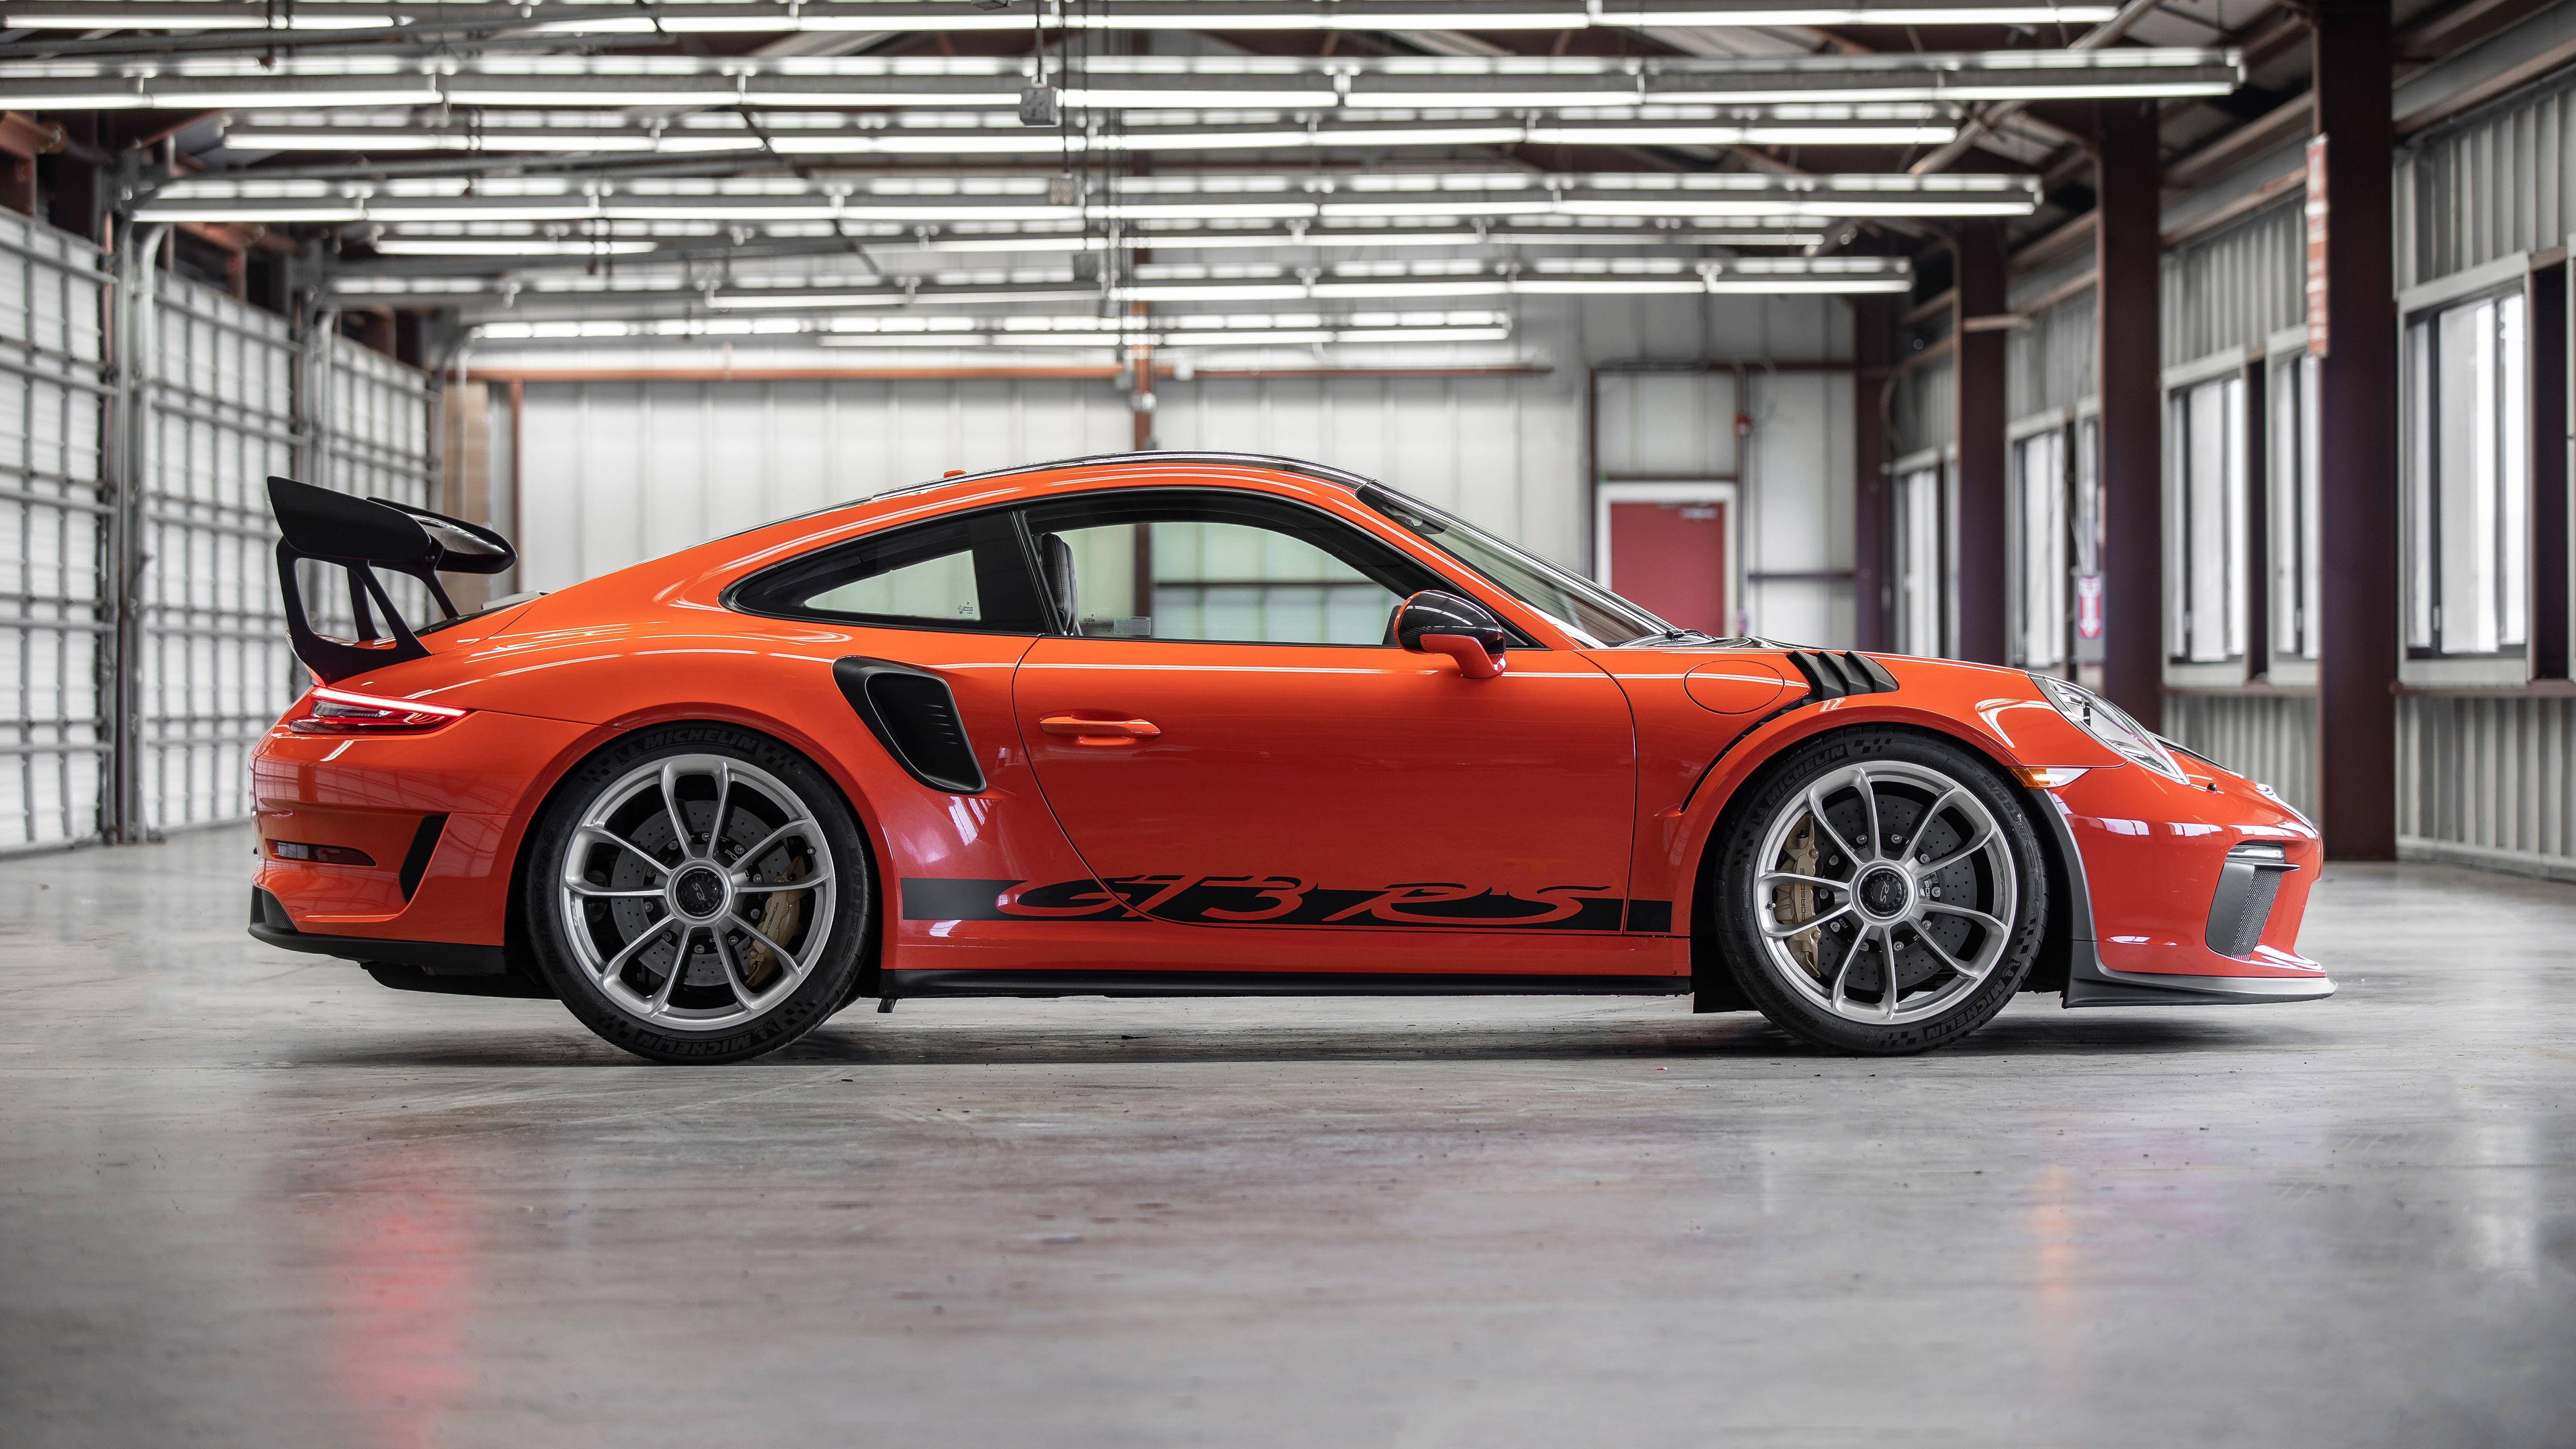 Porsche Ultra Wide Wallpapers Top Free Porsche Ultra Wide Backgrounds Wallpaperaccess